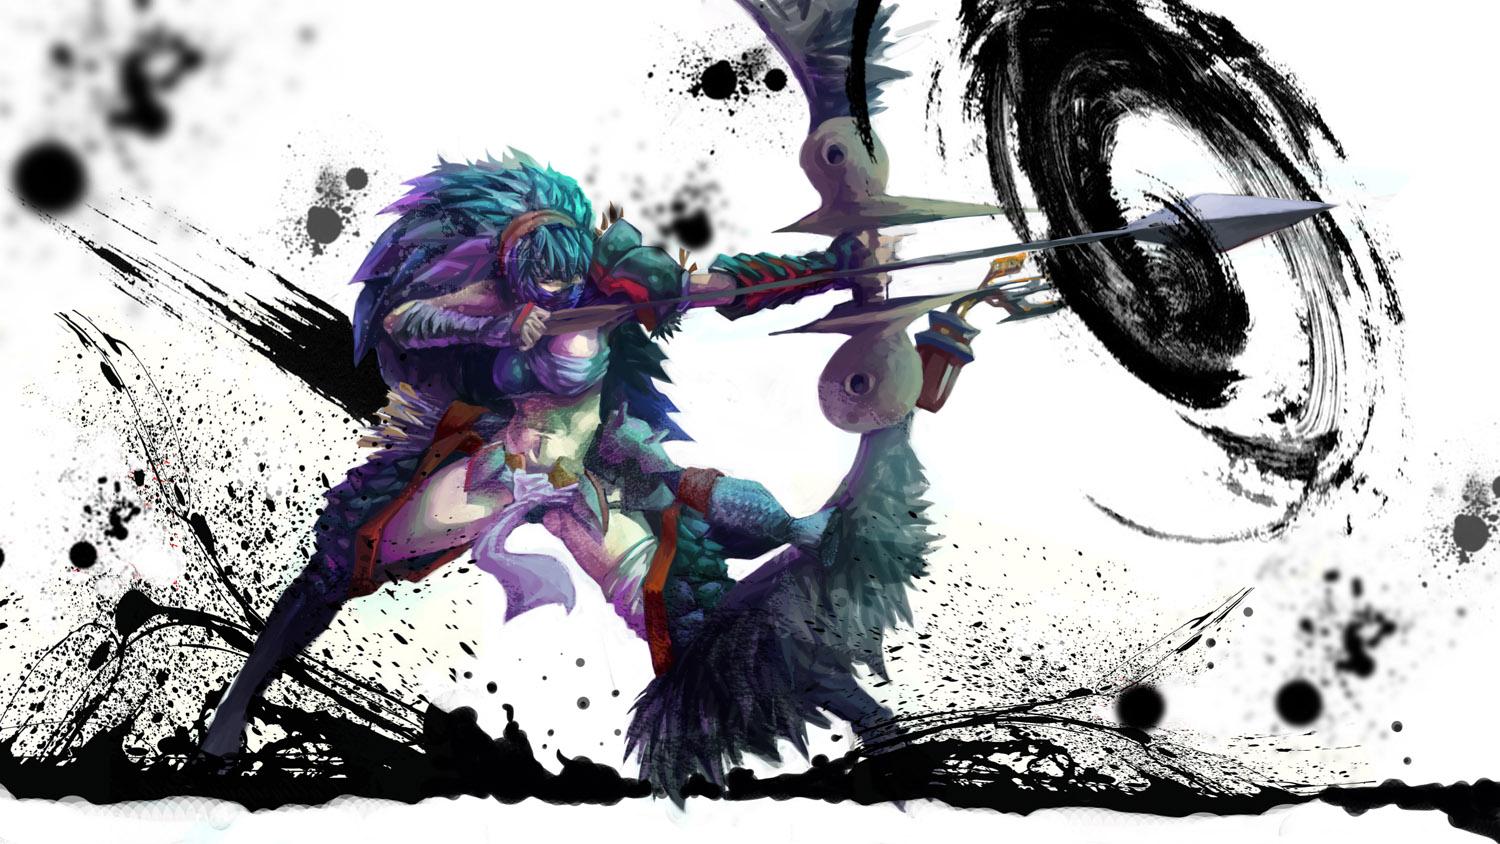 Monster Hunter Series Anime Image Board